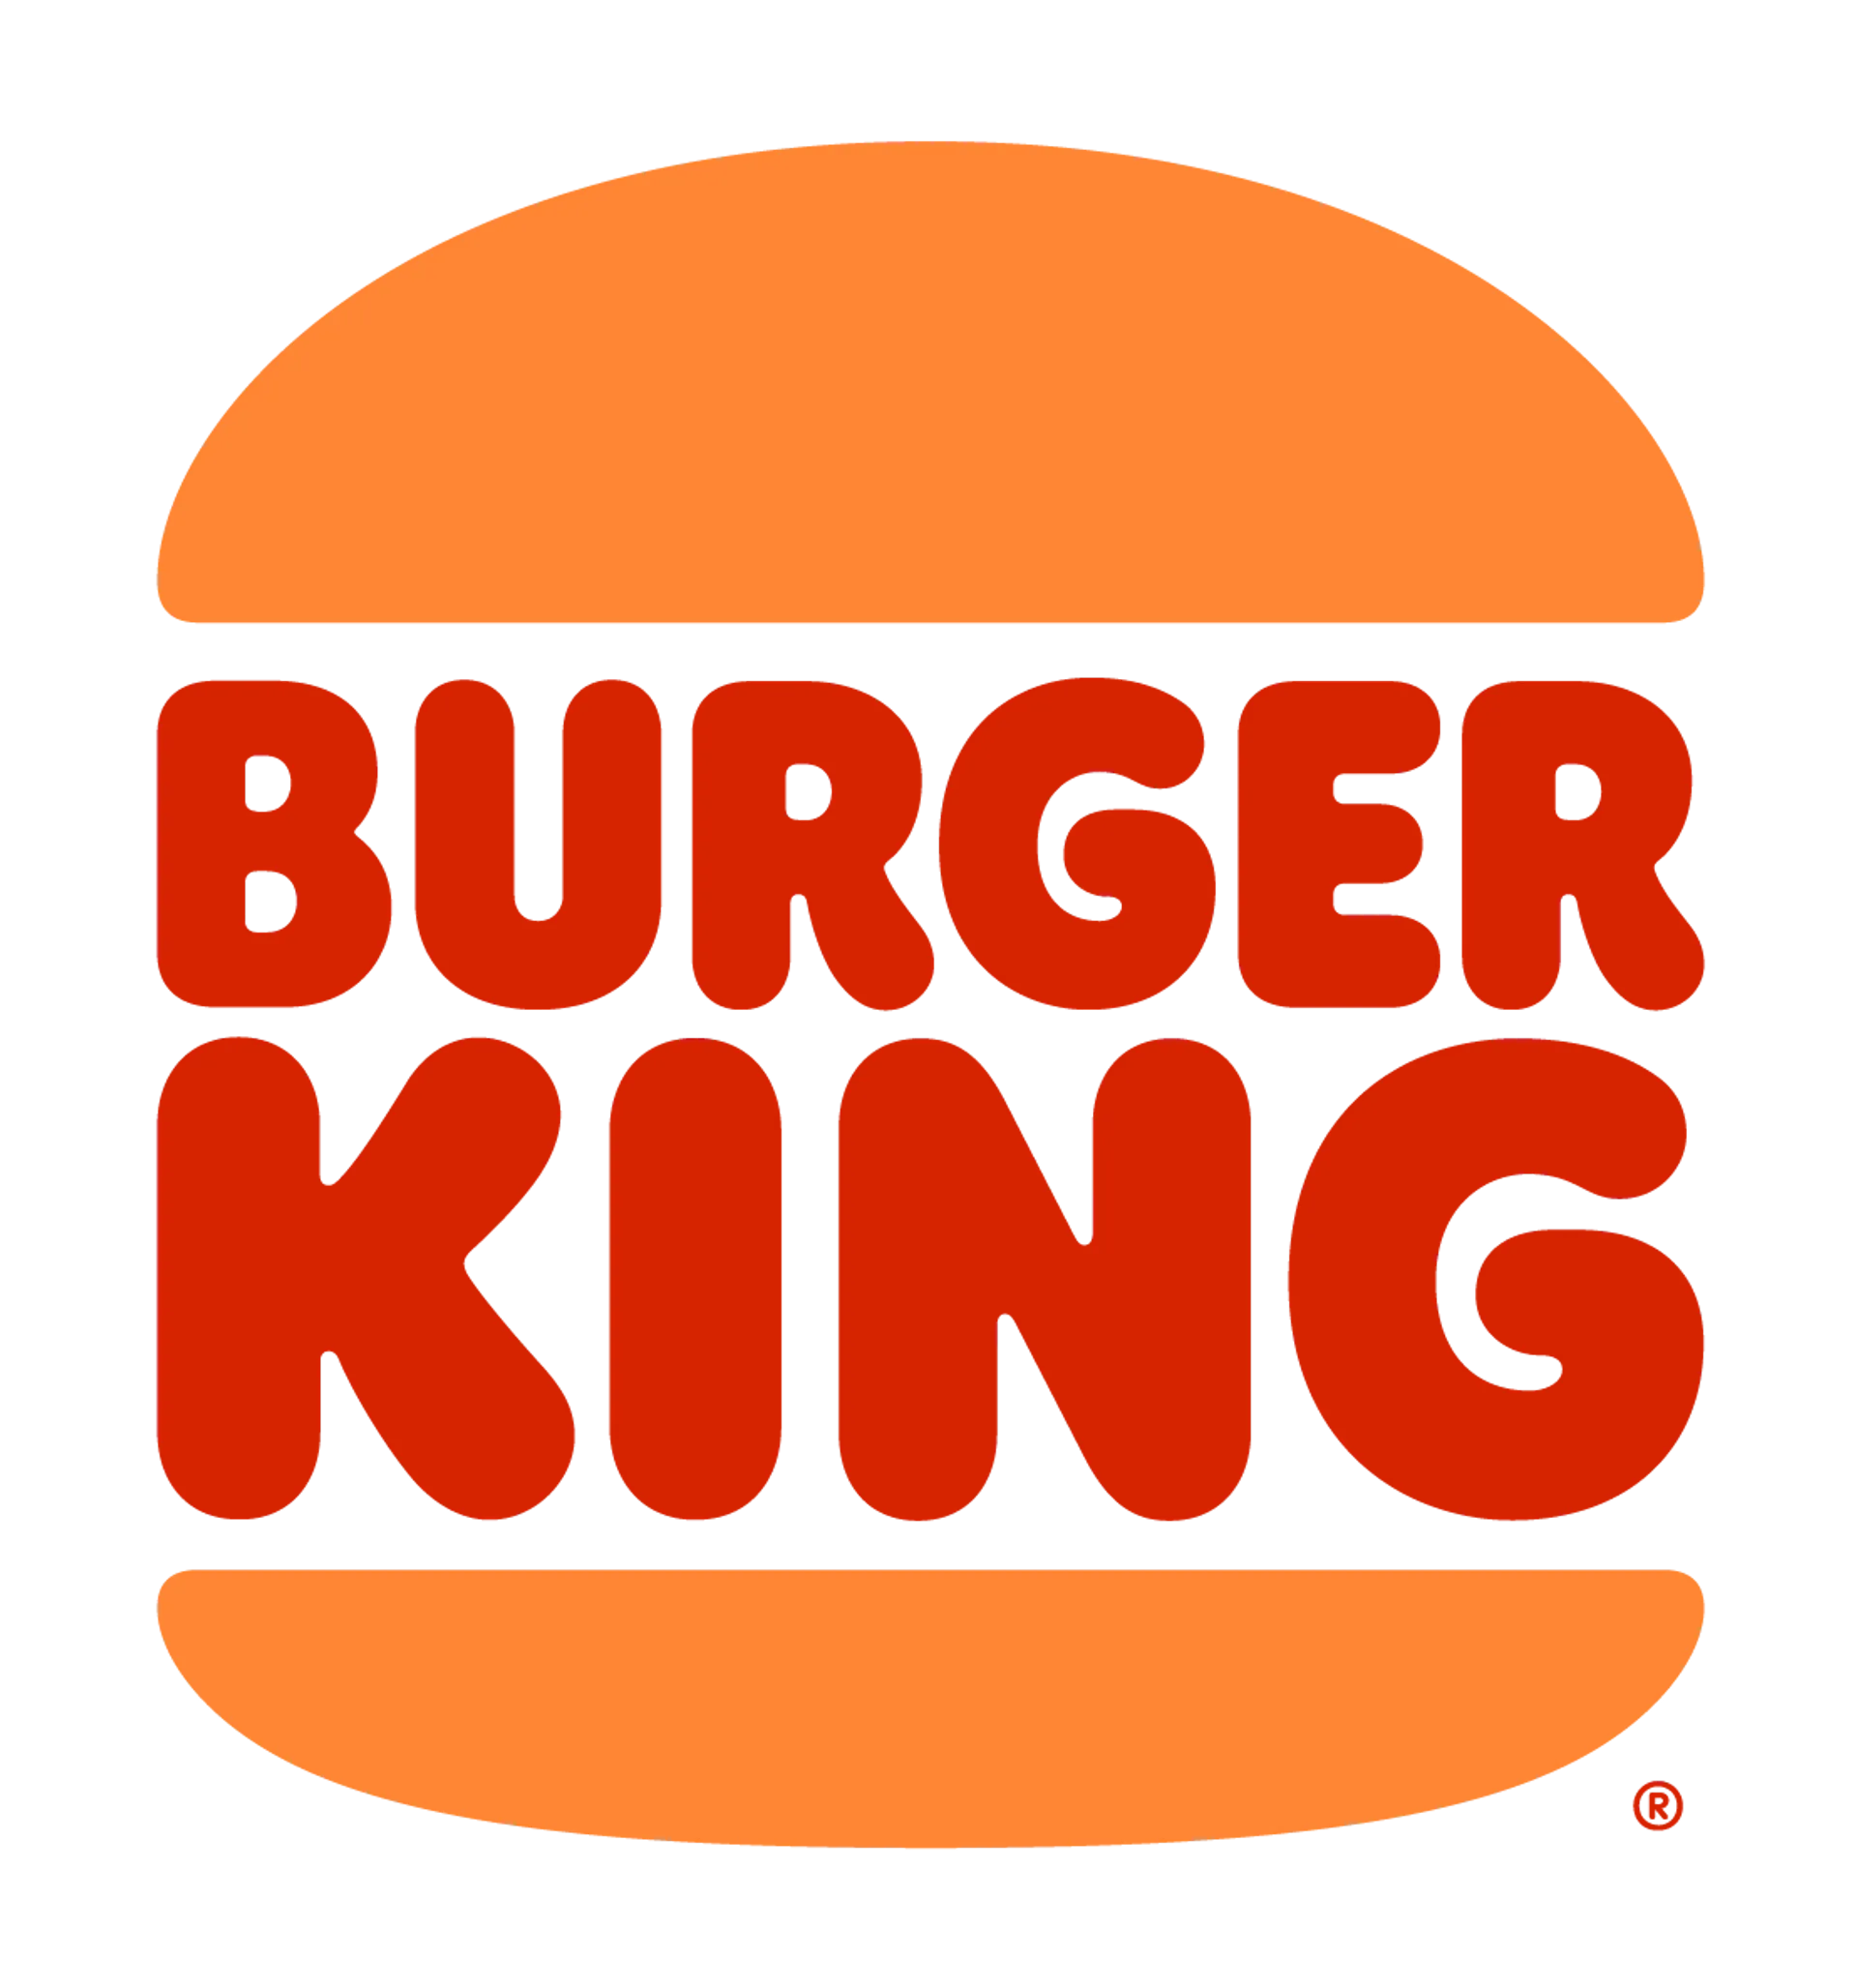 BURGER KING logo die aktuell Flugblatt